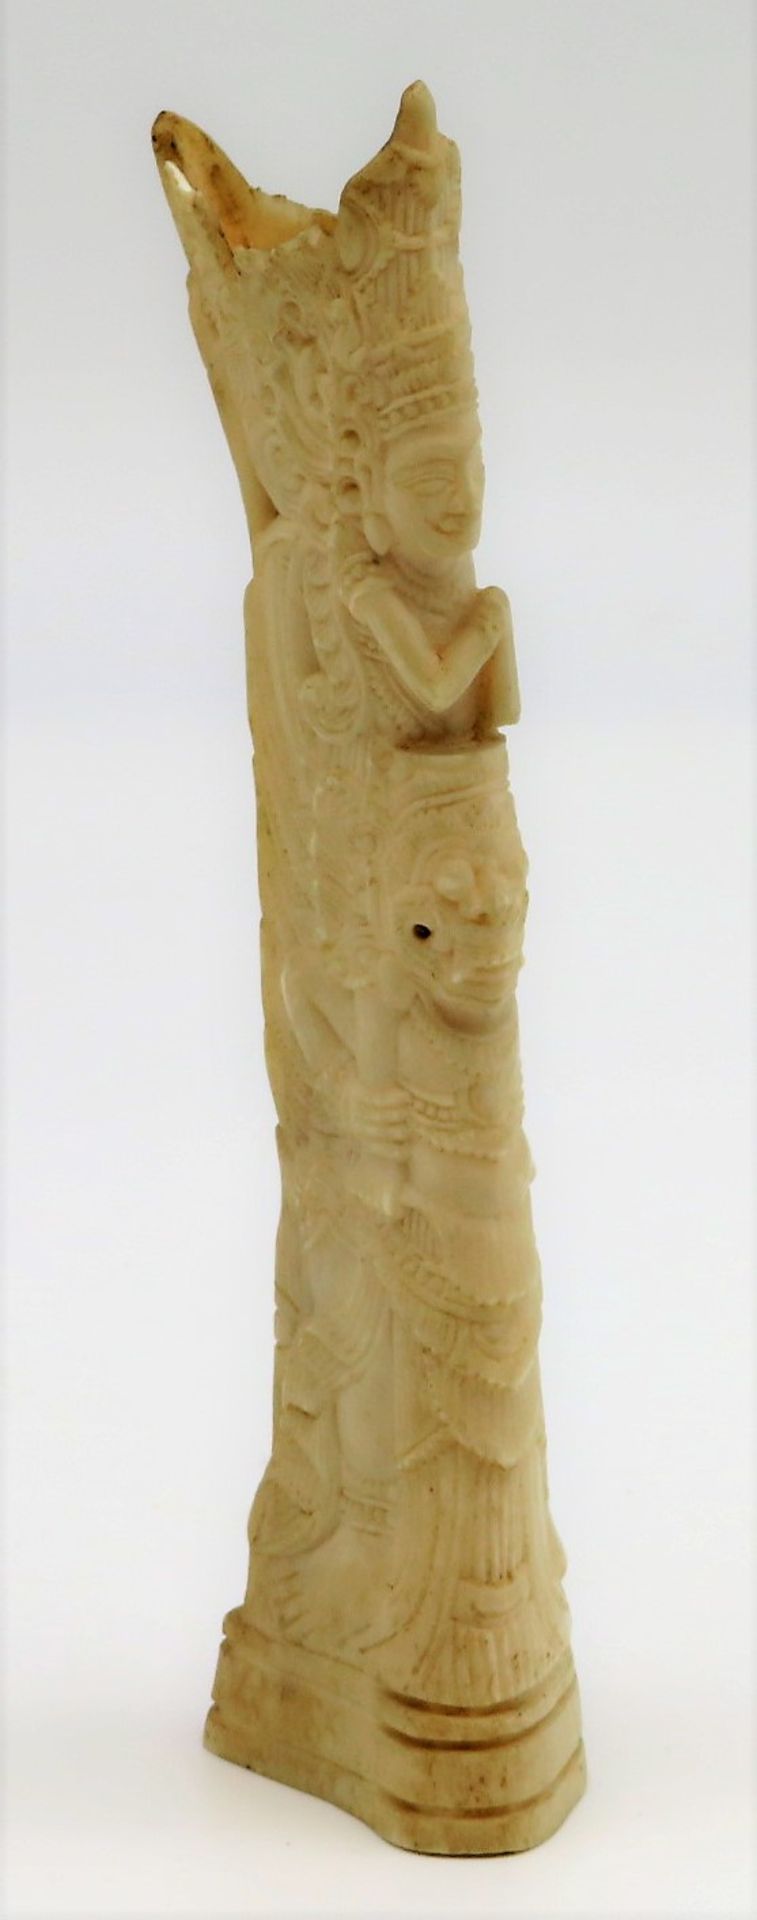 Schnitzerei, Indonesien, 19. Jahrhundert, Bein fein mit Gottheiten geschnitzt, 2 x min.best., h 16 